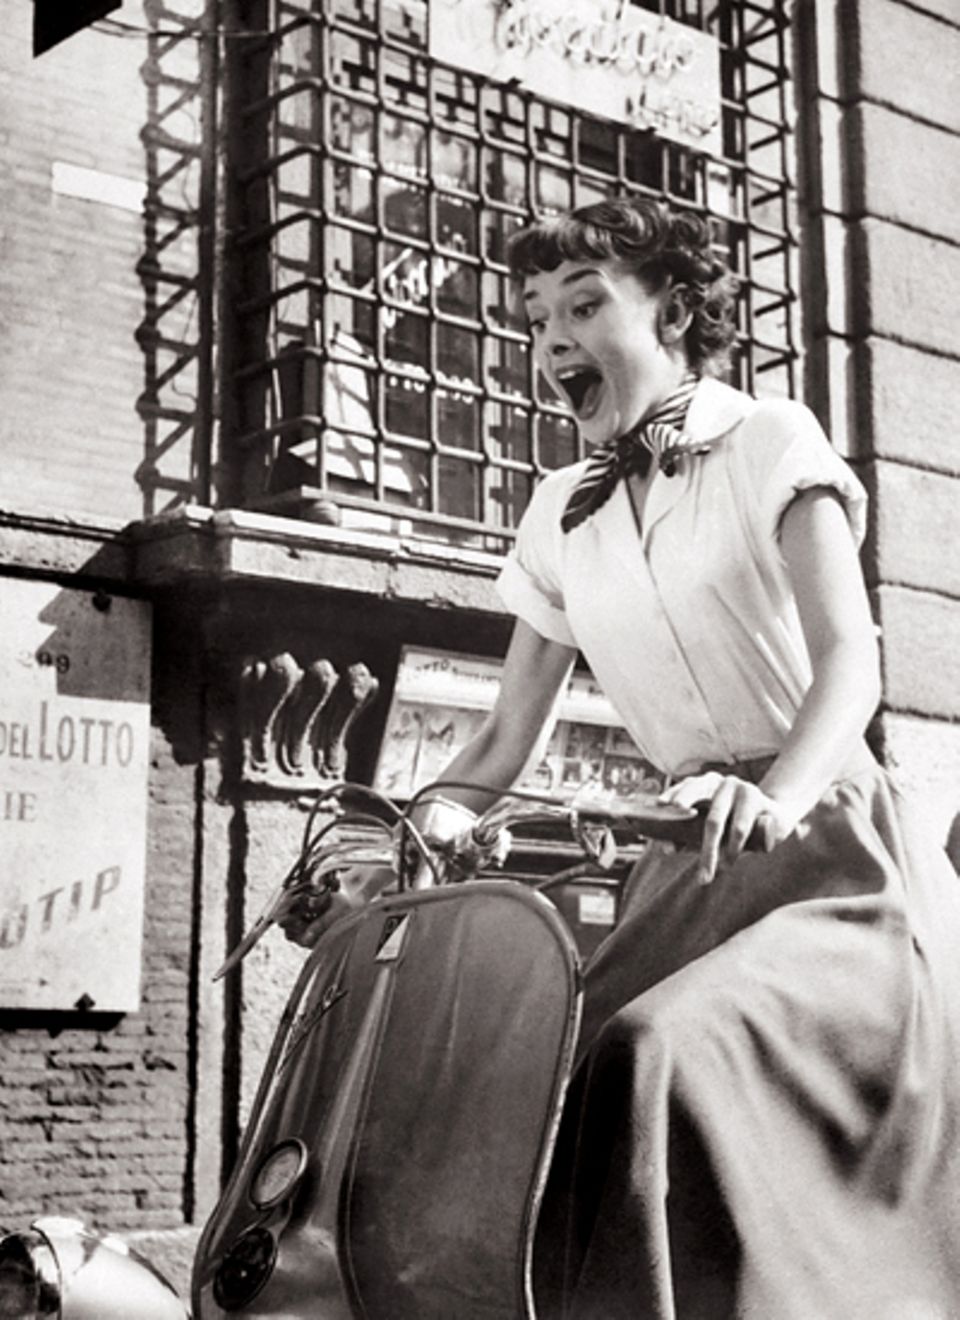 Stars & Bikes - Prominente und ihre Motorräder:
 Audrey Hepburn 1951 in "Ein Herz und eine Krone" auf einer Vespa 125.